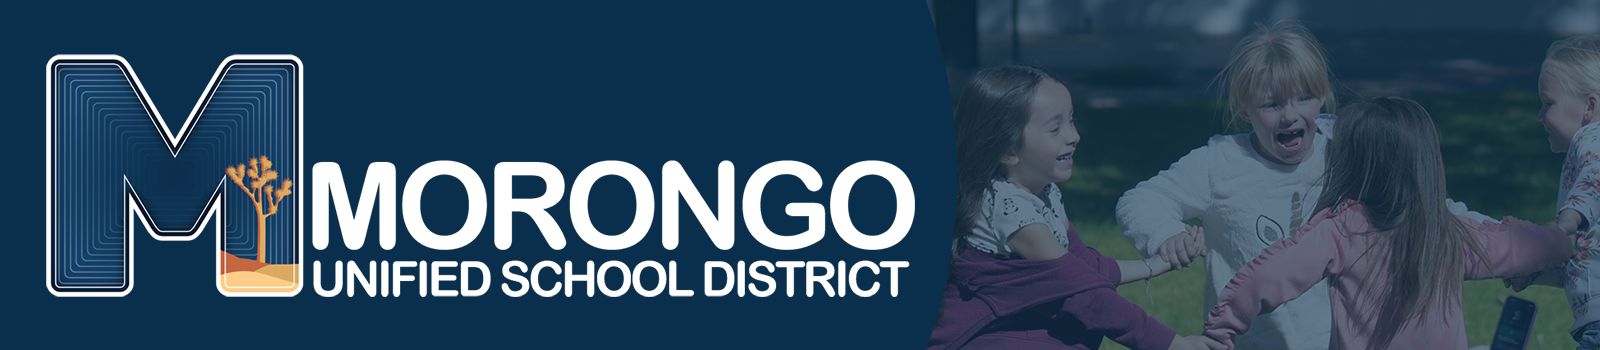 Morongo Unified School District Logo